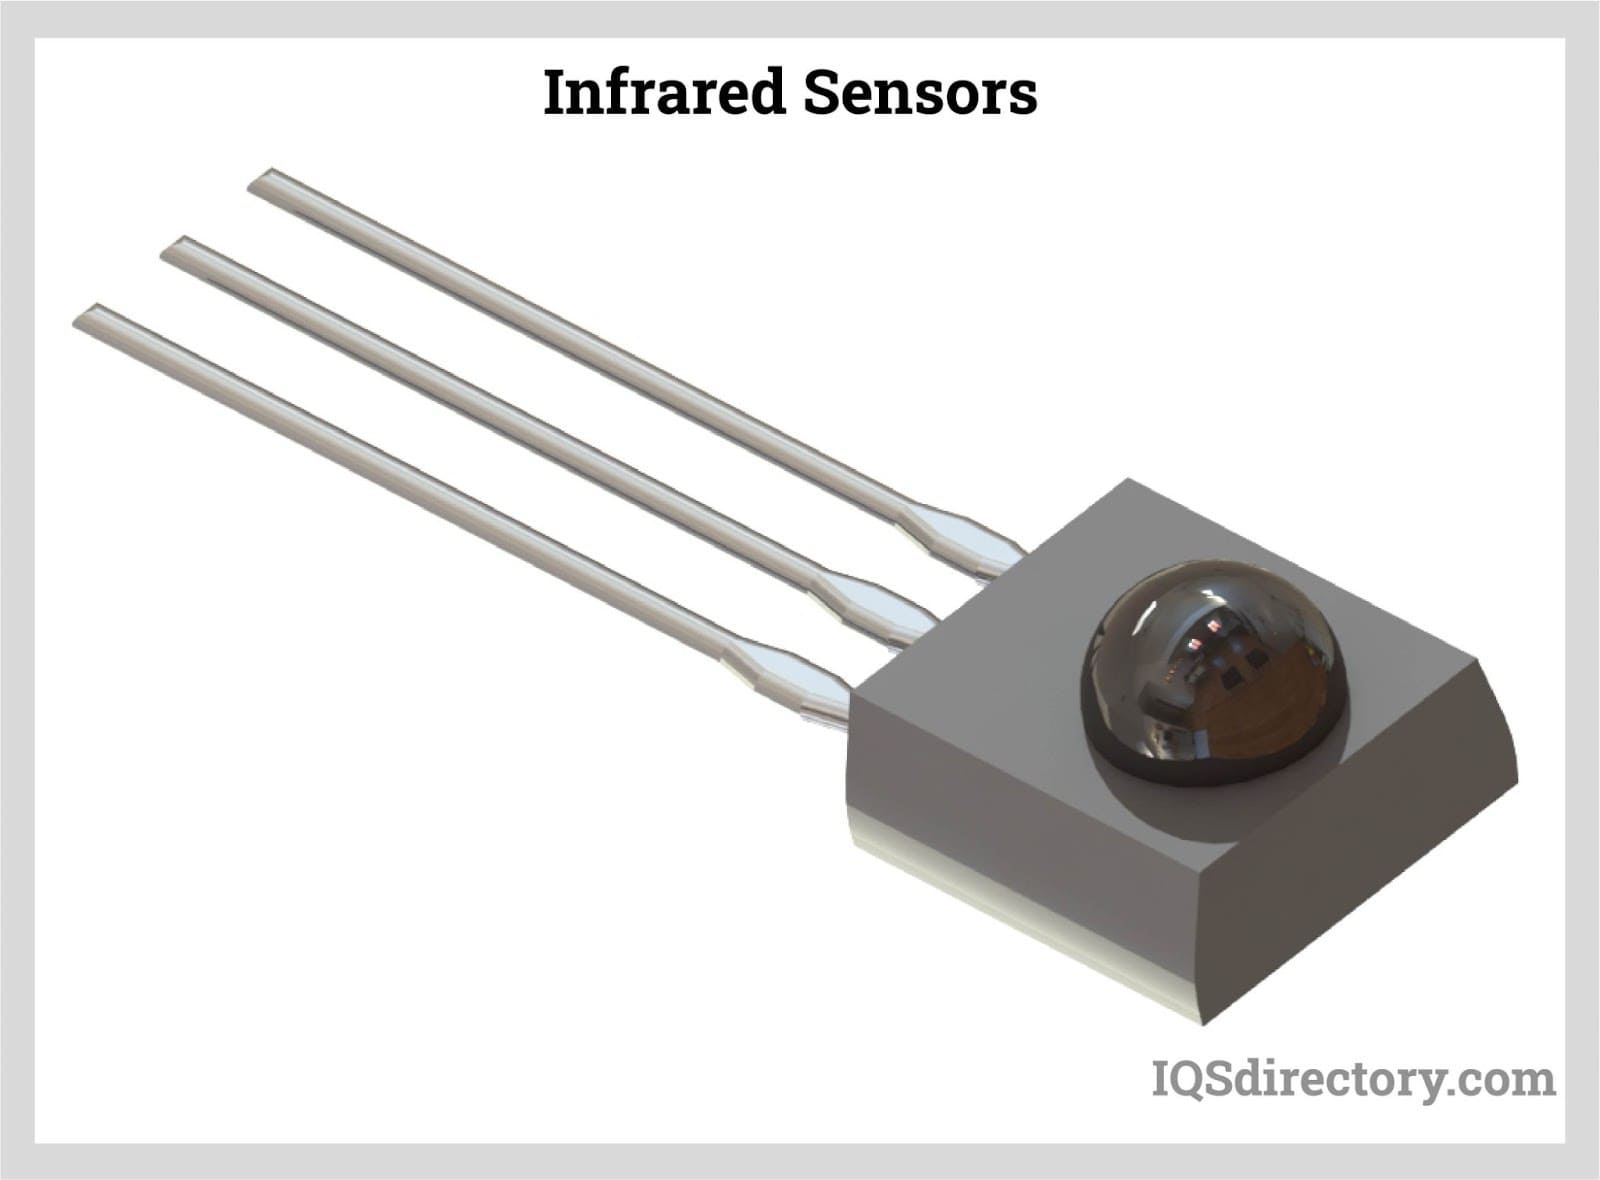 Infrared Sensors